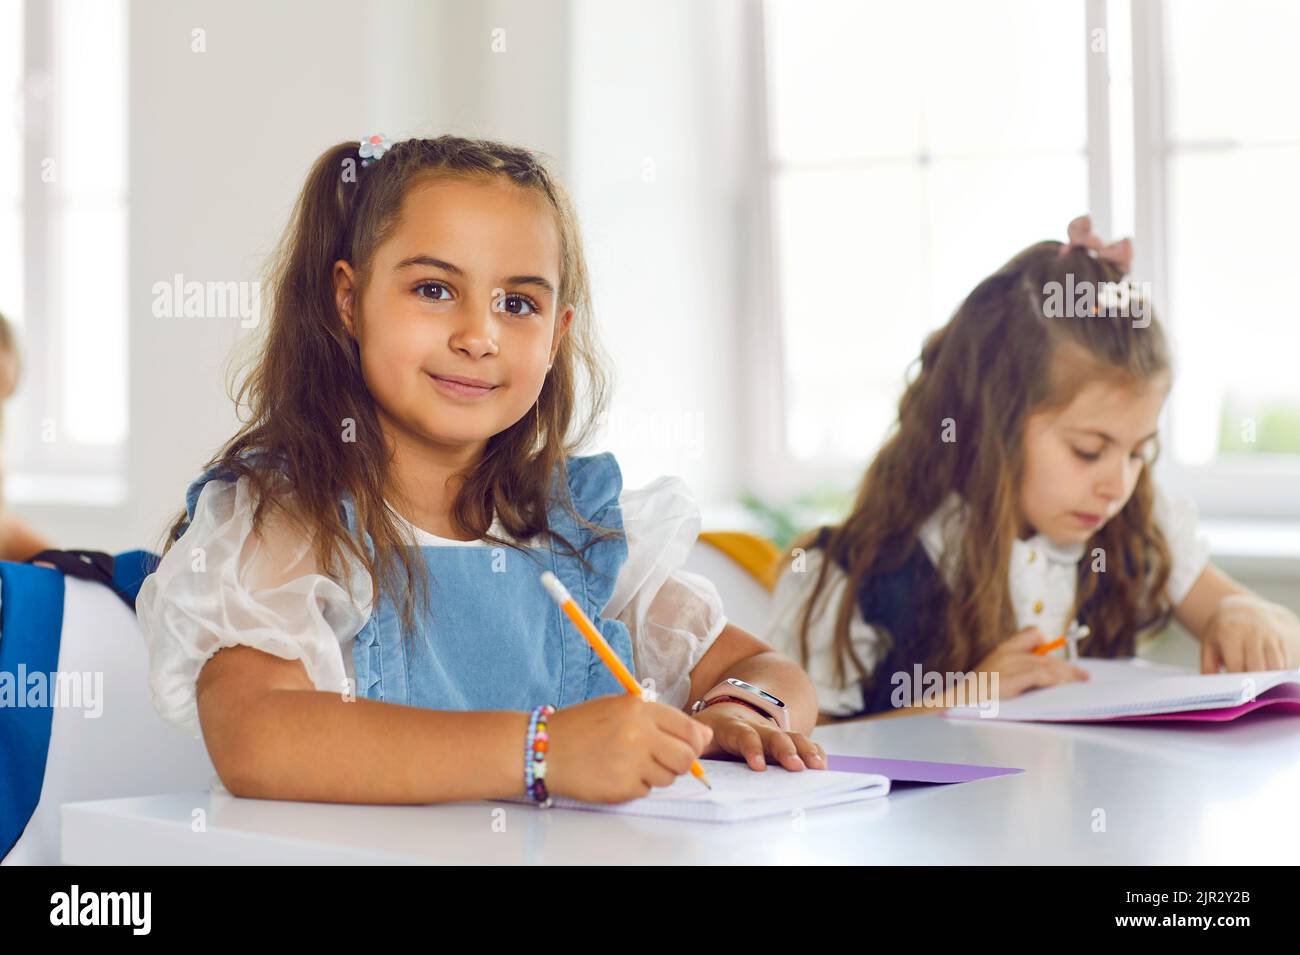 Ritratto di simpatica bambina sorridente seduta in classe e godendosi gli studi. Foto Stock